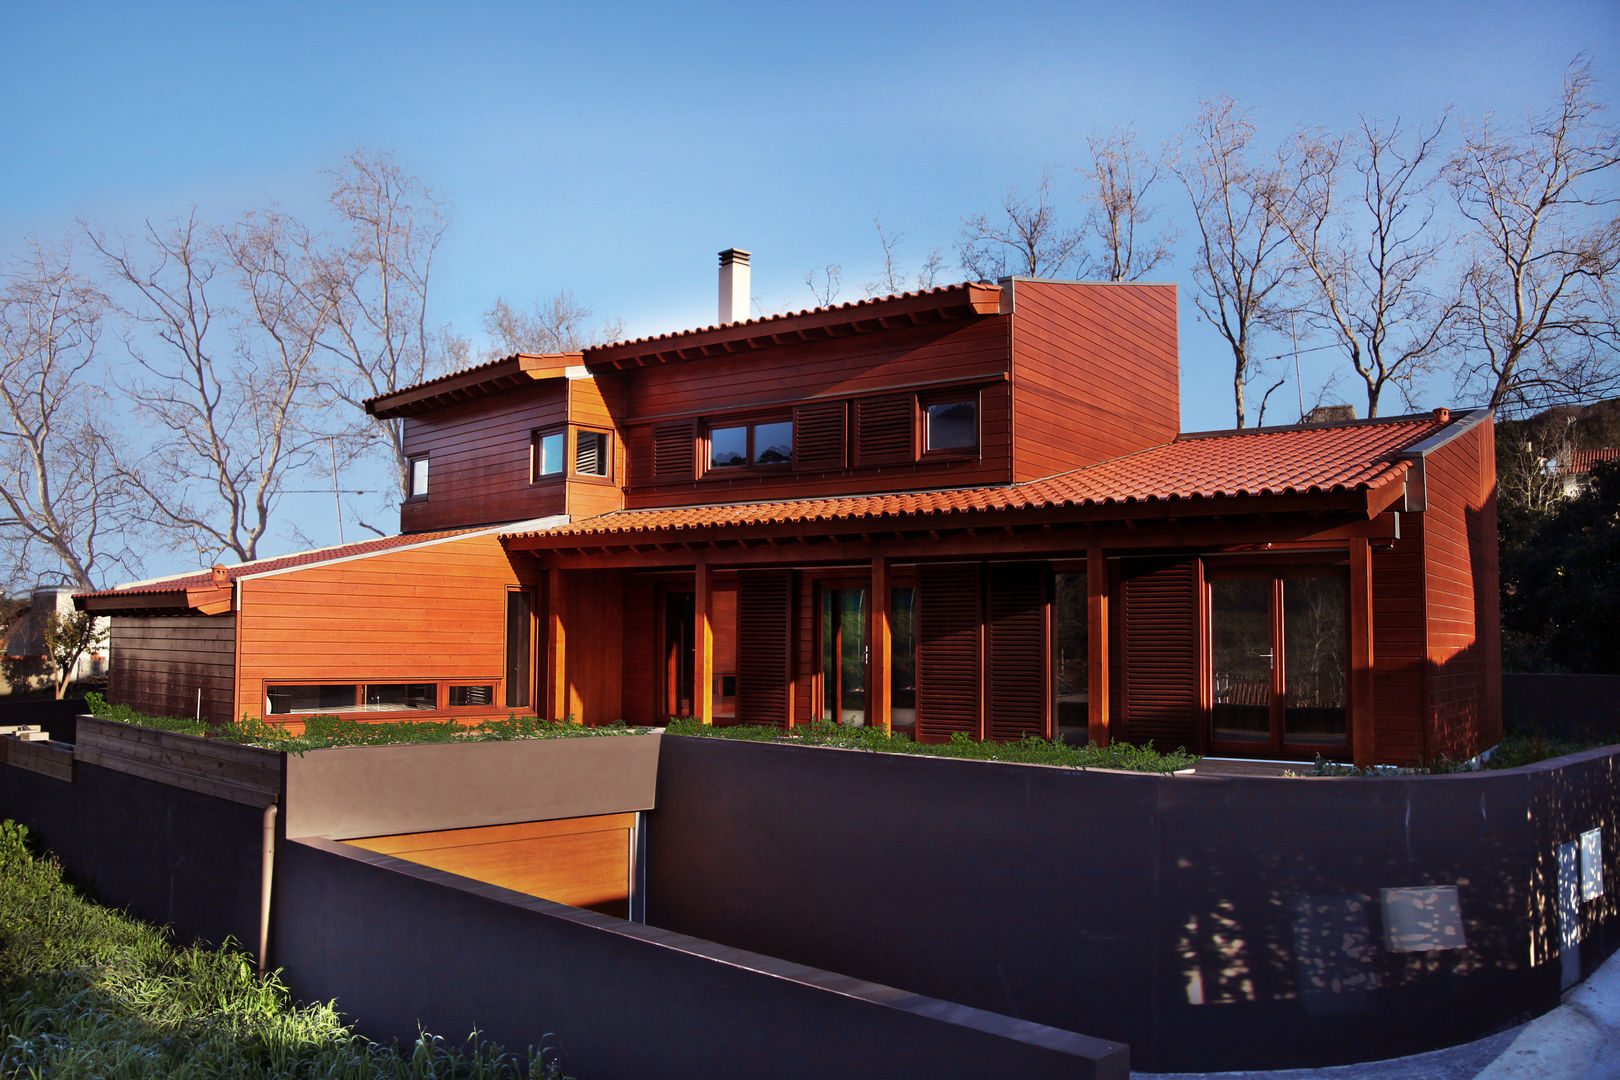 RUSTICASA | 100 projetos | Portugal + Espanha, RUSTICASA RUSTICASA Dom z drewna Drewno O efekcie drewna